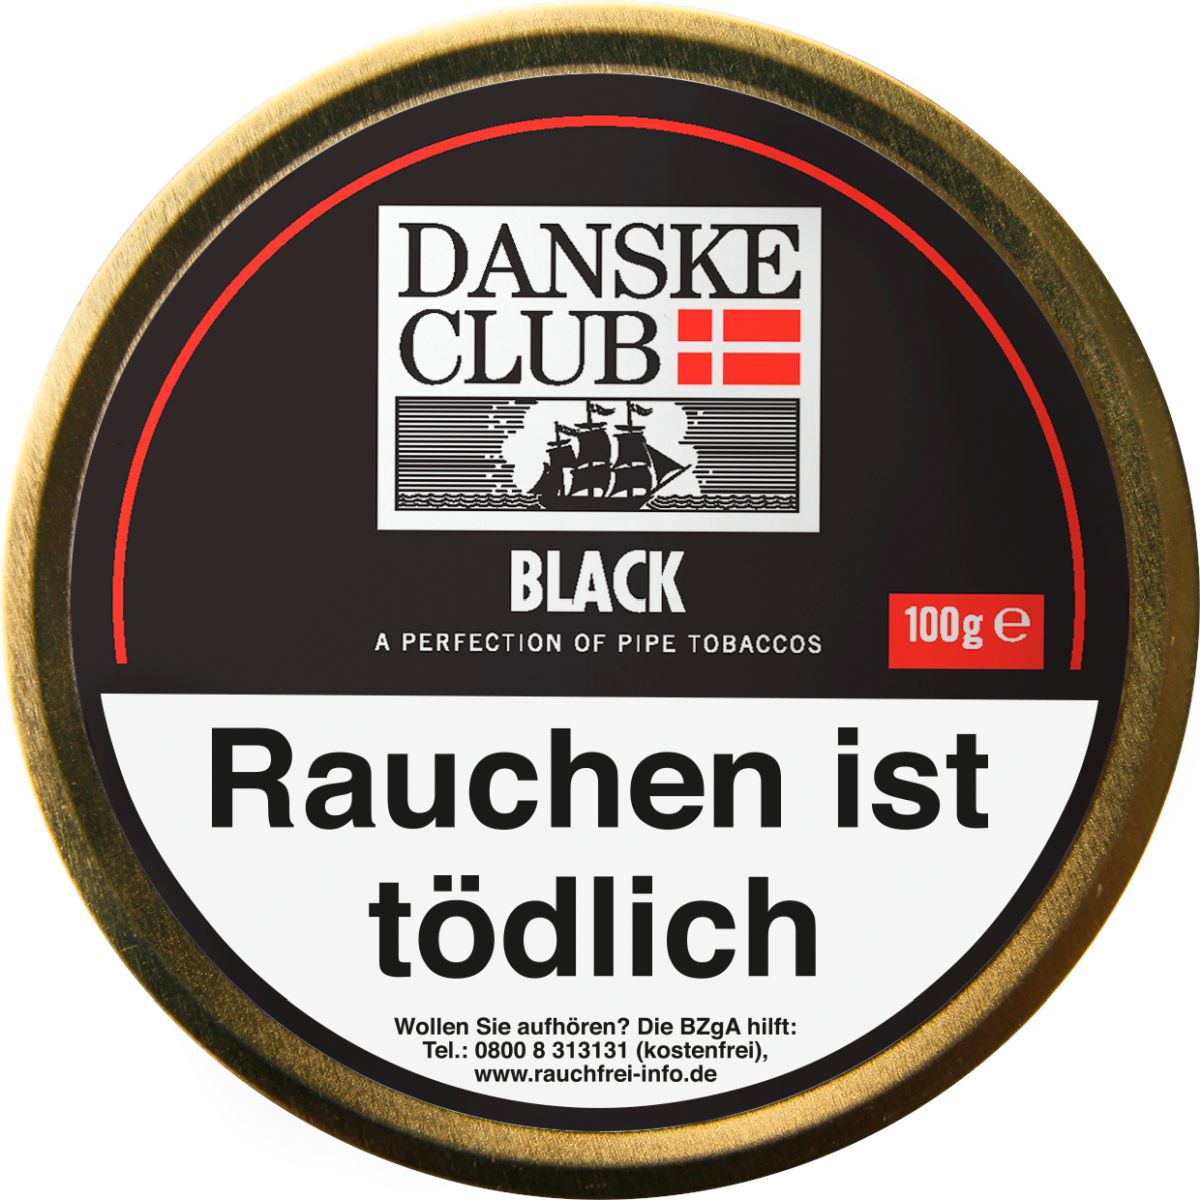 Danske Club Danske Club Black bei www.Tabakring.de kaufen